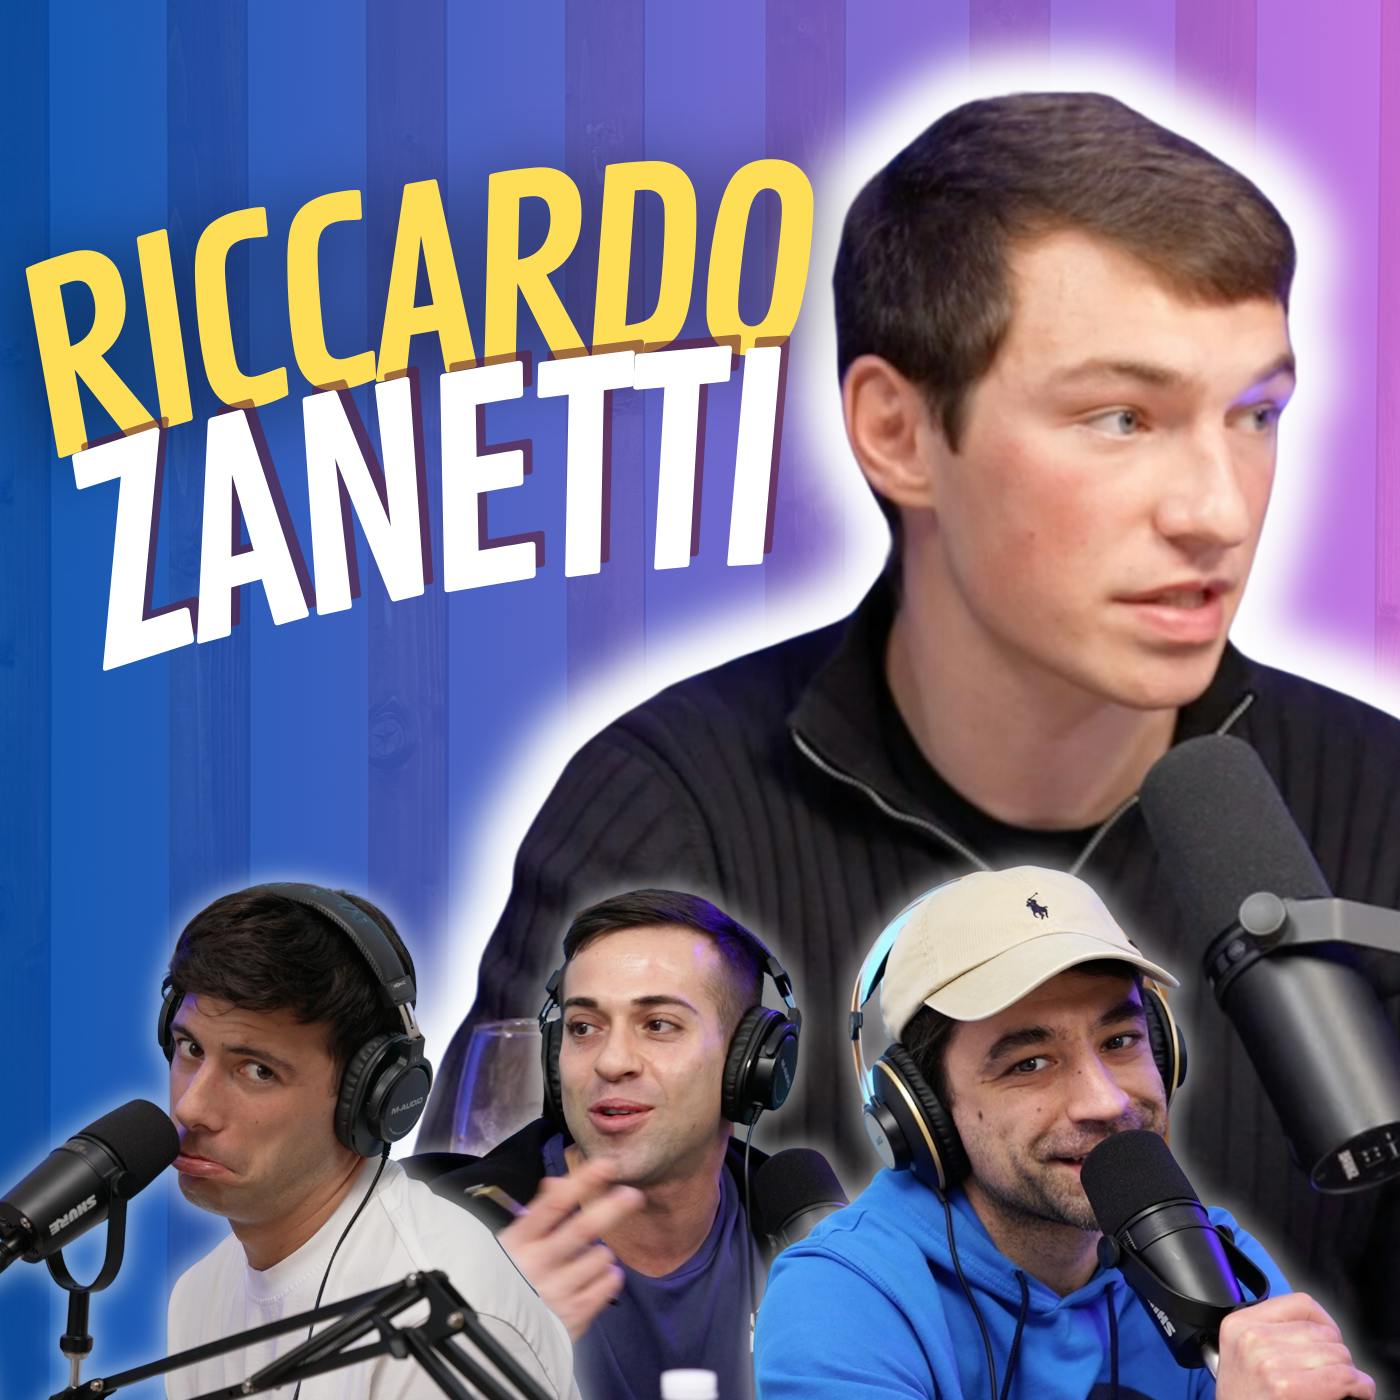 "INVESTIMENTI, INCIDENTI E STRISCIA LA NOTIZIA" - Con Riccardo Zanetti